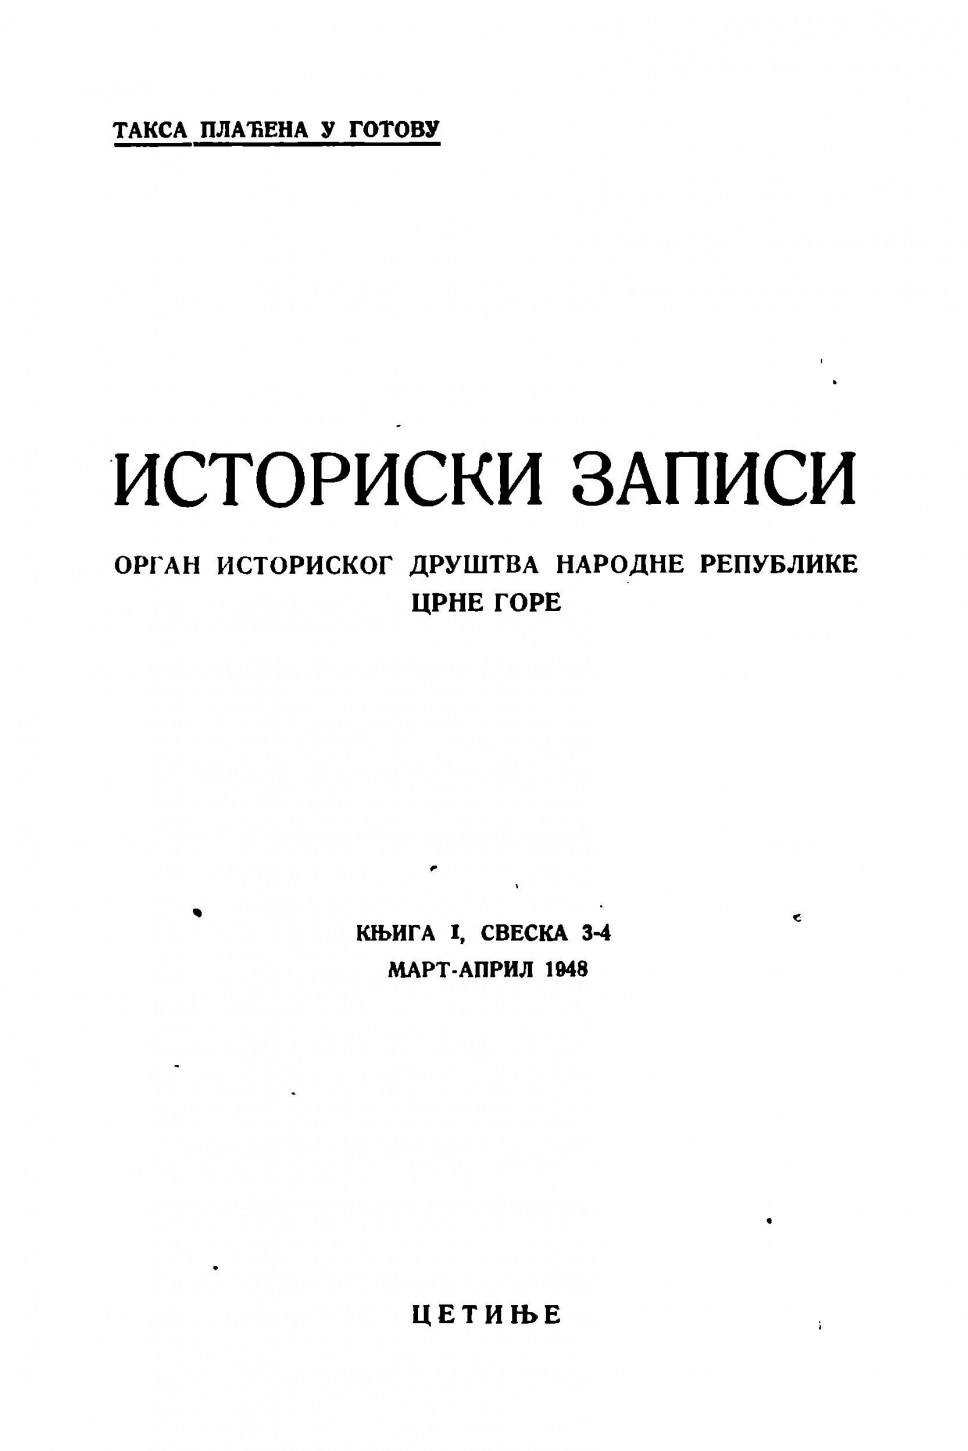 Istorijski zapisi 3-4/1948